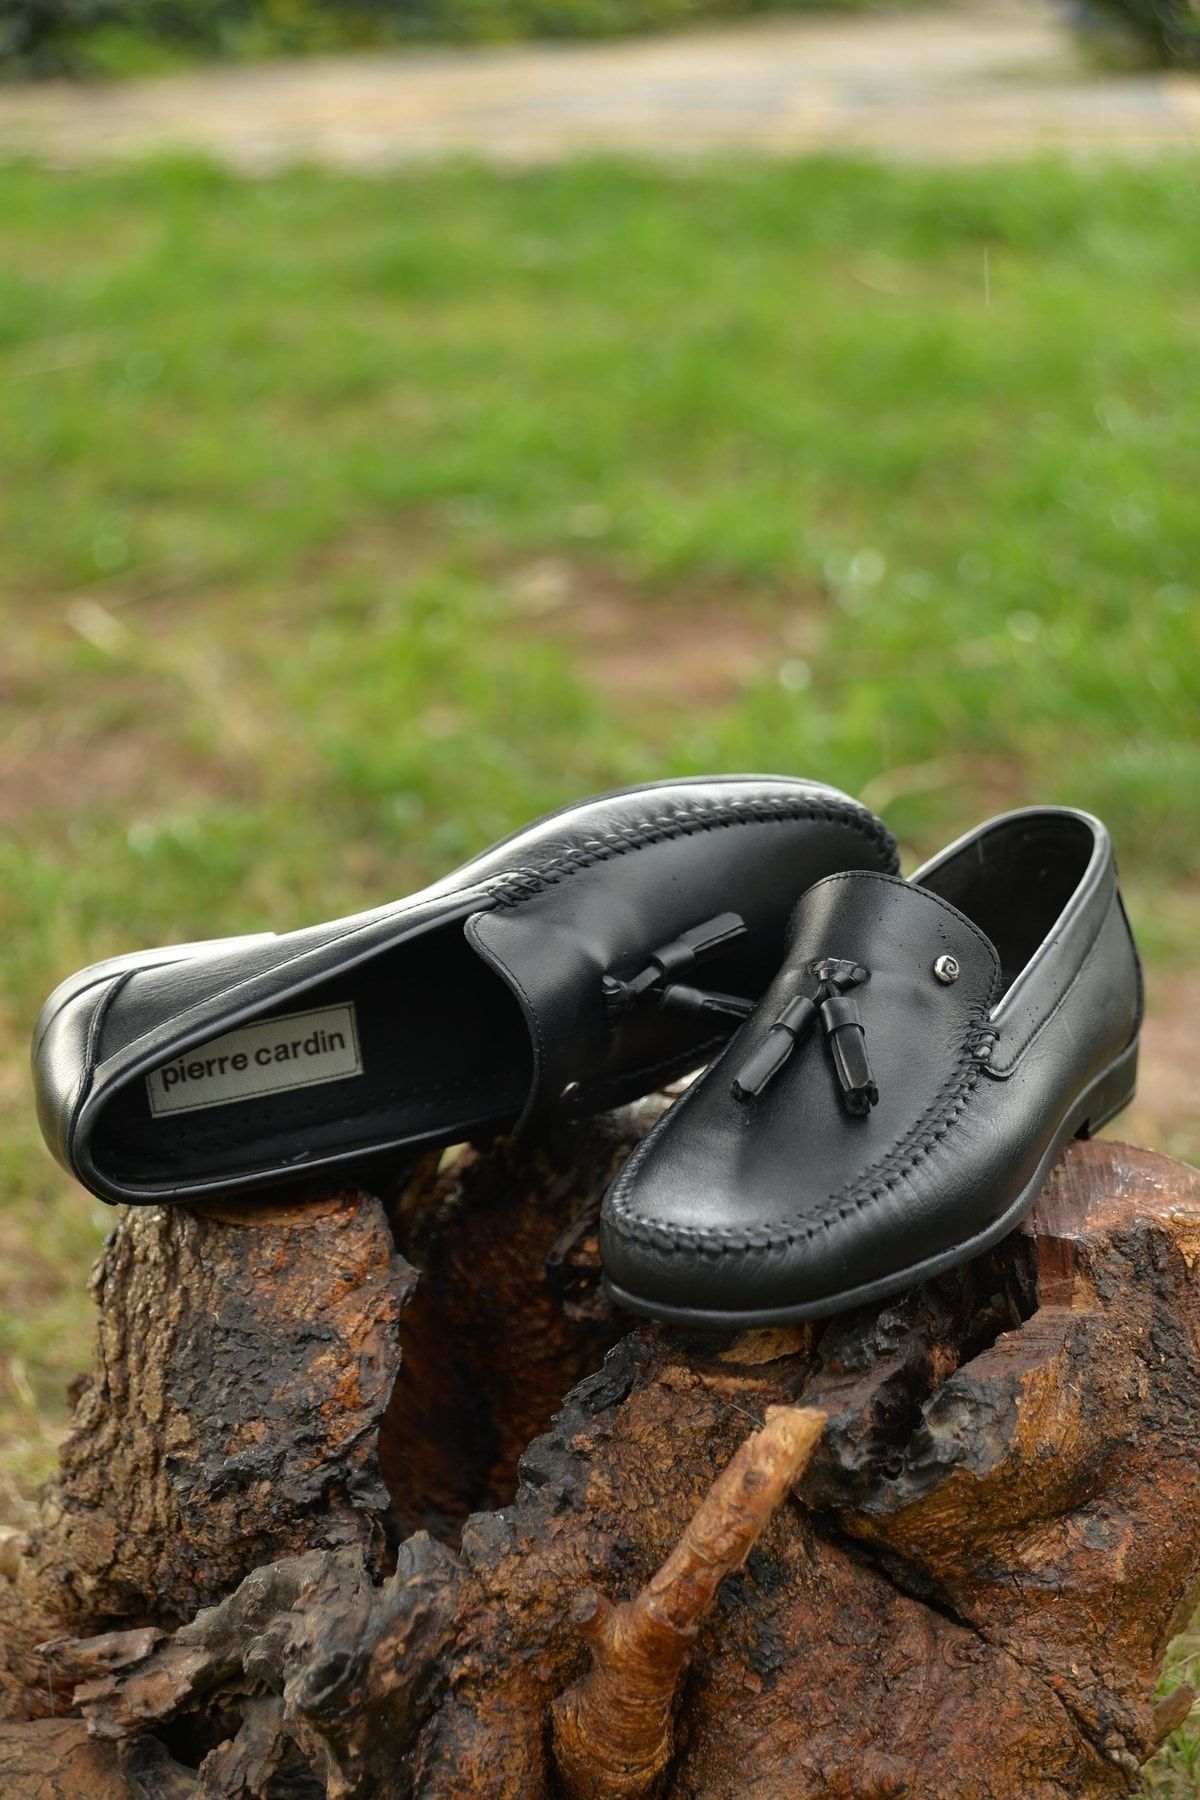 Pierre Cardin Hakiki Deri Siyah Loafer Günlük Ayakkabı Sağlamlık Ve Şıklığı Bir Arada Sunan Model